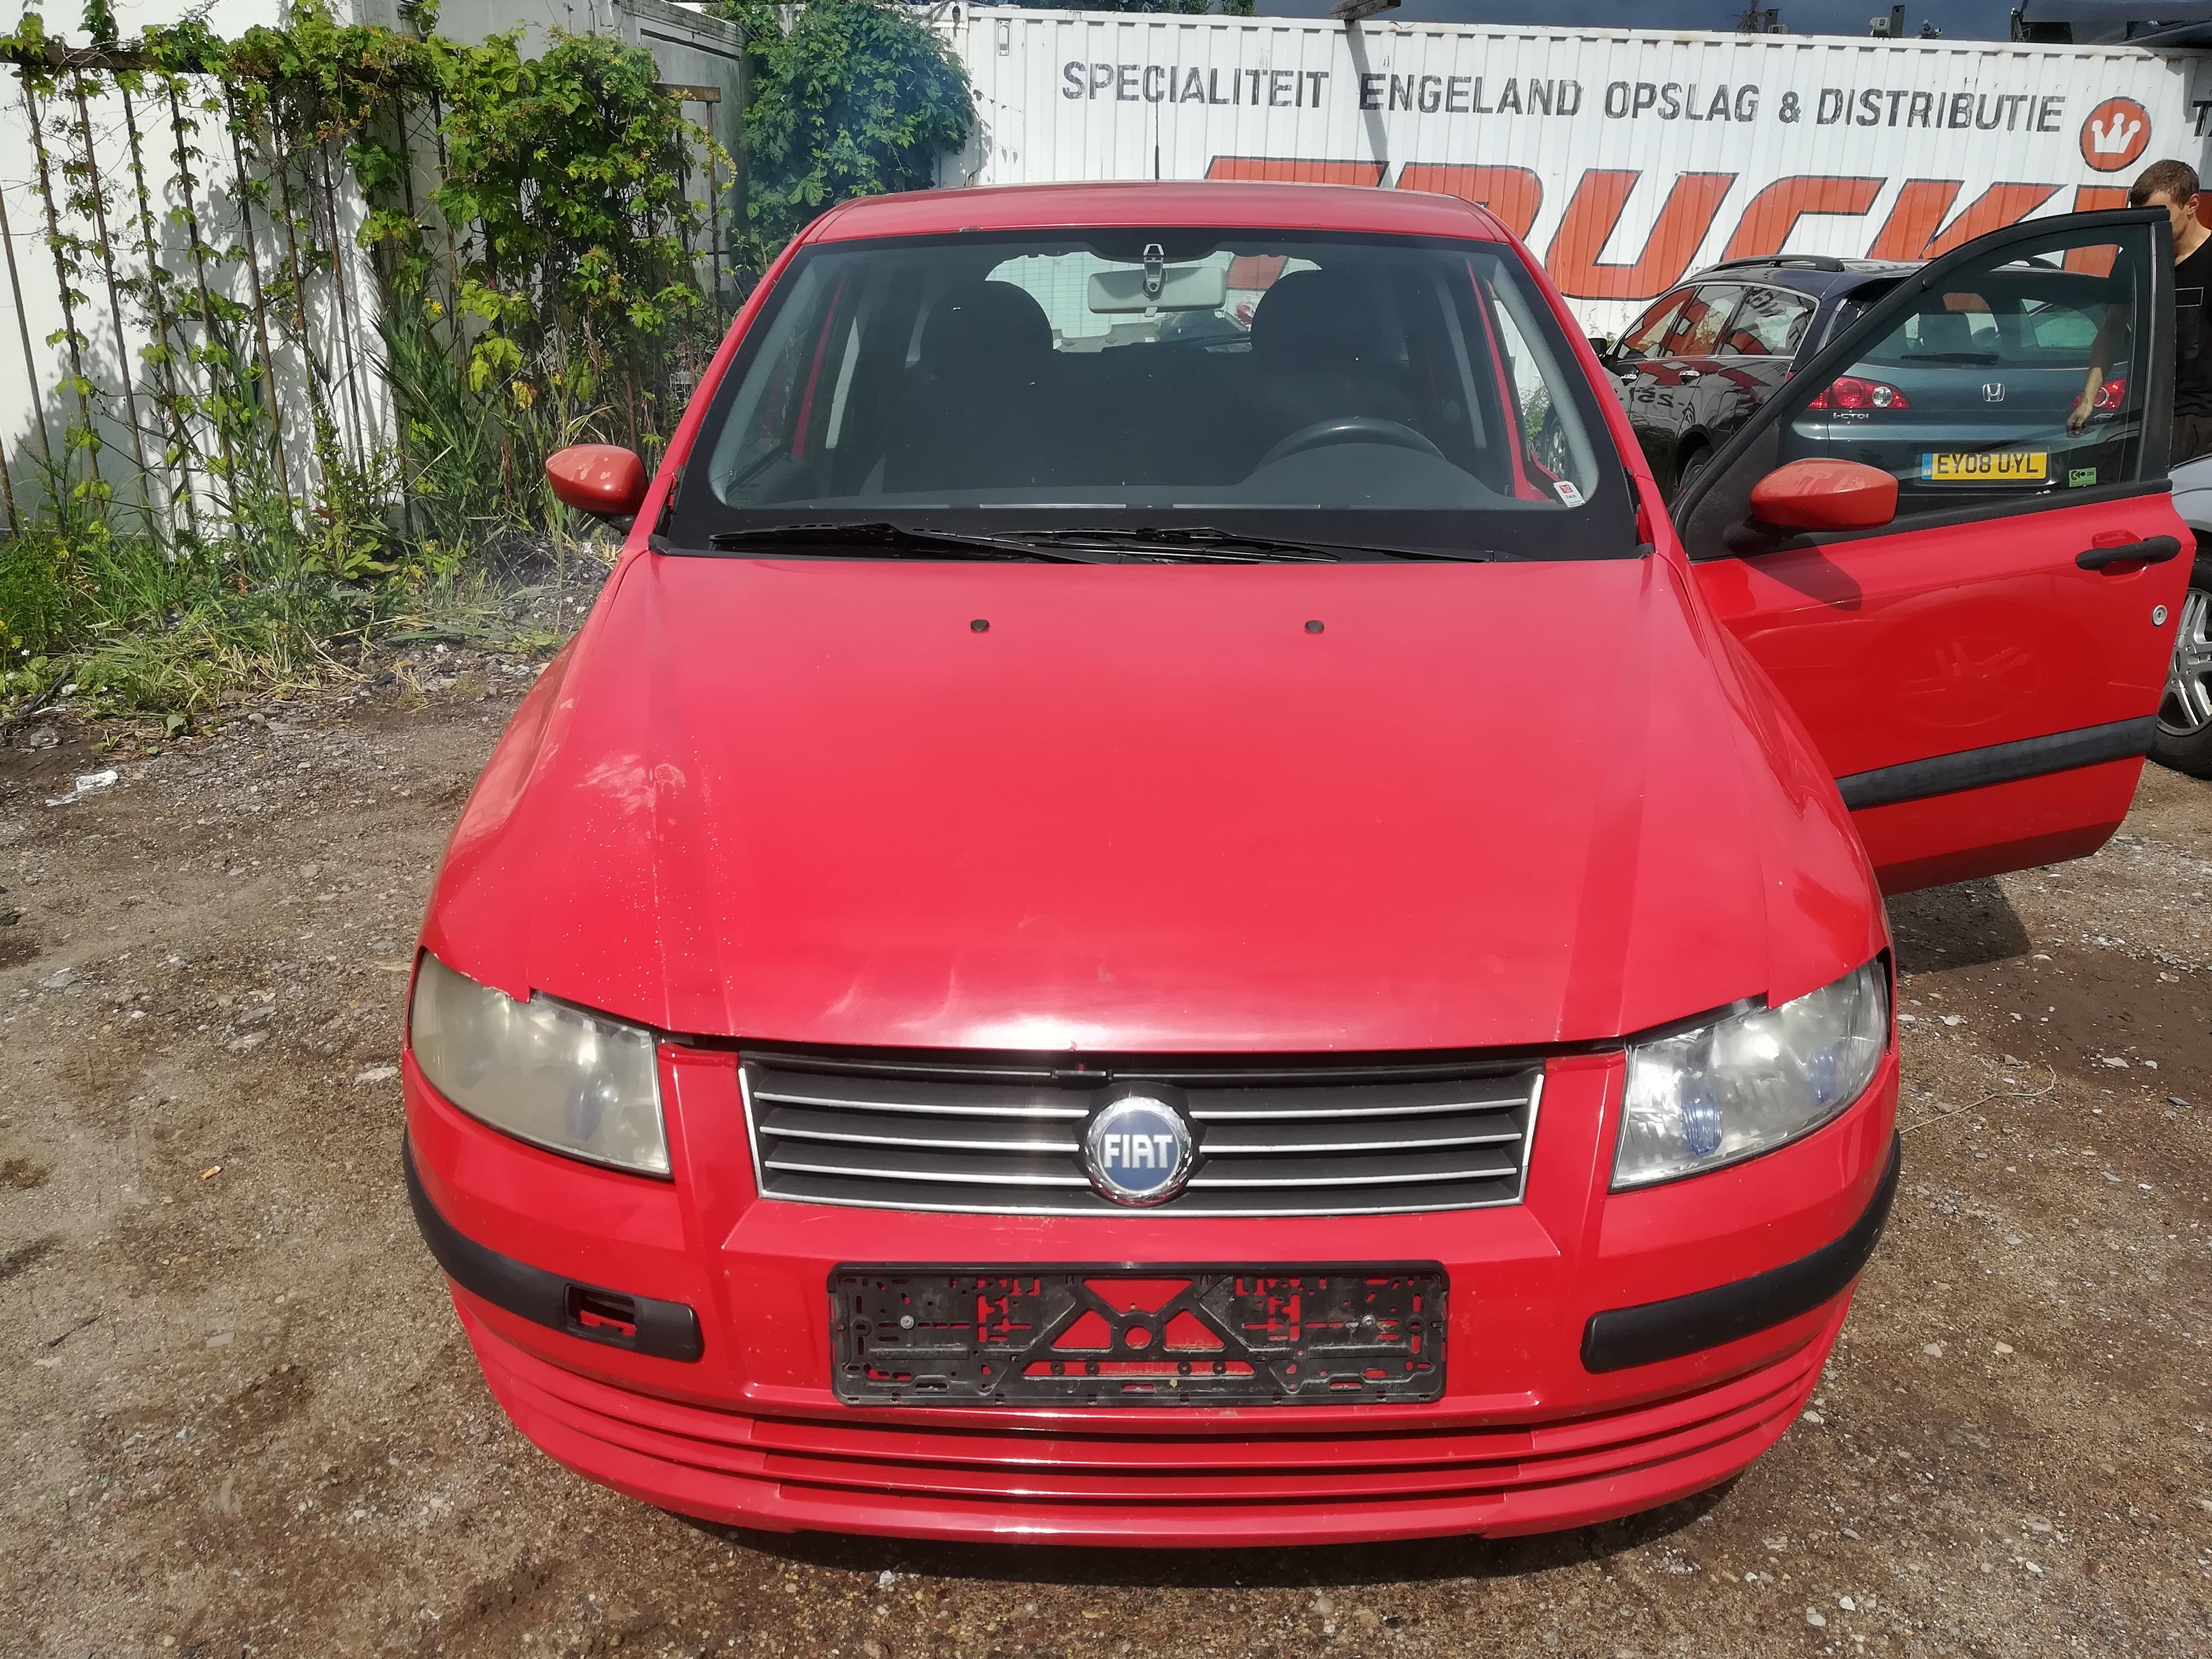 Подержанные Автозапчасти Fiat STILO 2002 1.6 машиностроение хэтчбэк 4/5 d. красный 2019-7-18